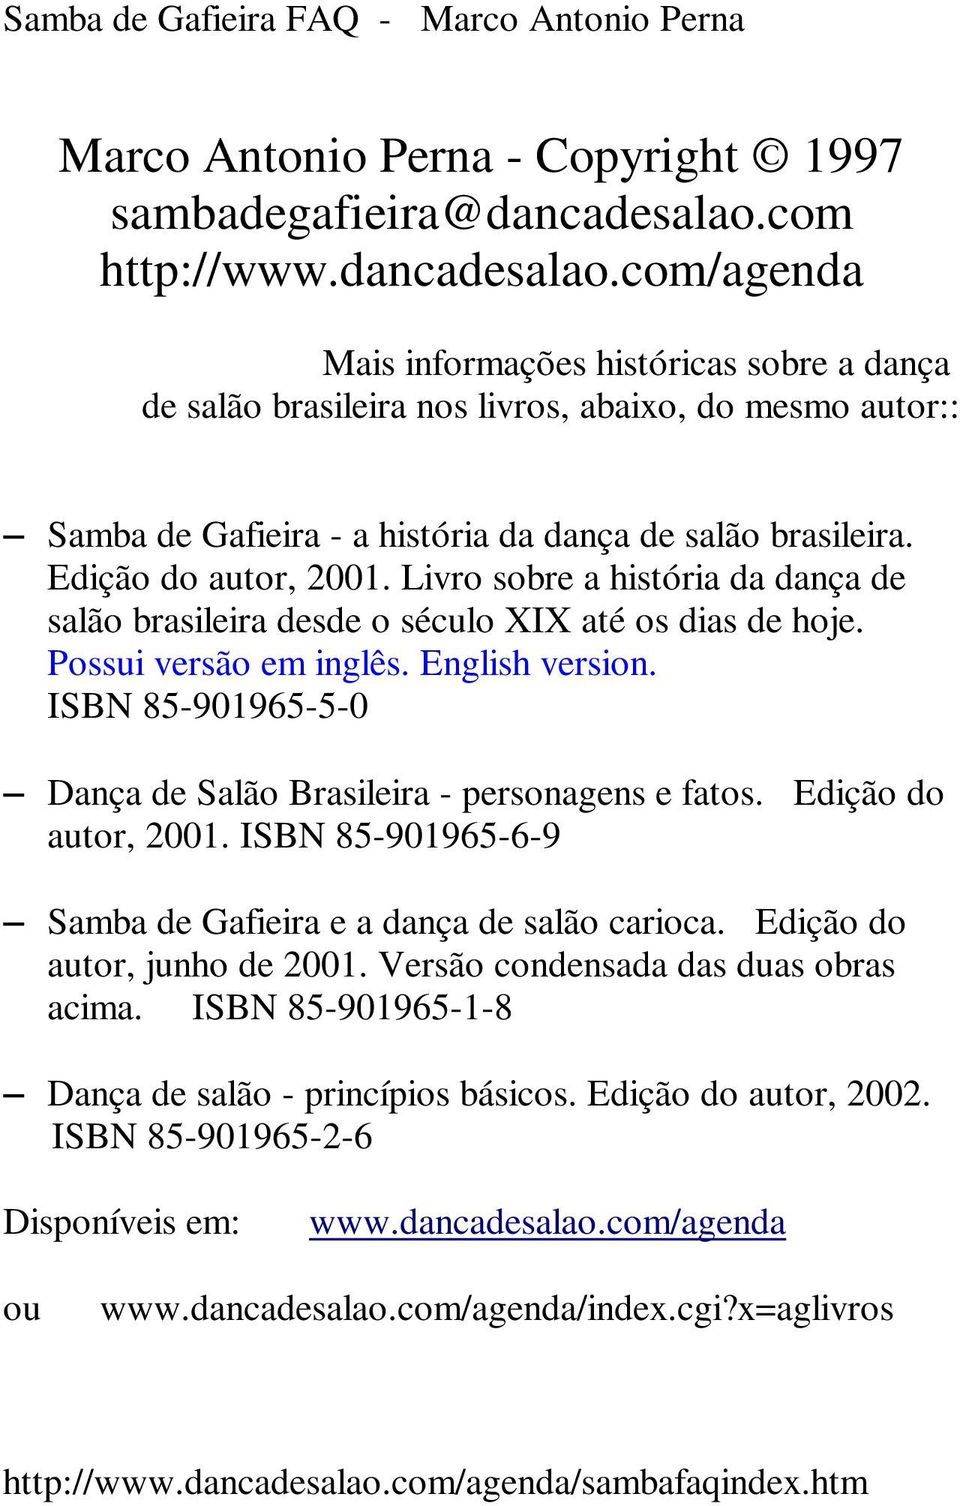 Edição do autor, 2001. Livro sobre a história da dança de salão brasileira desde o século XIX até os dias de hoje. Possui versão em inglês. English version.